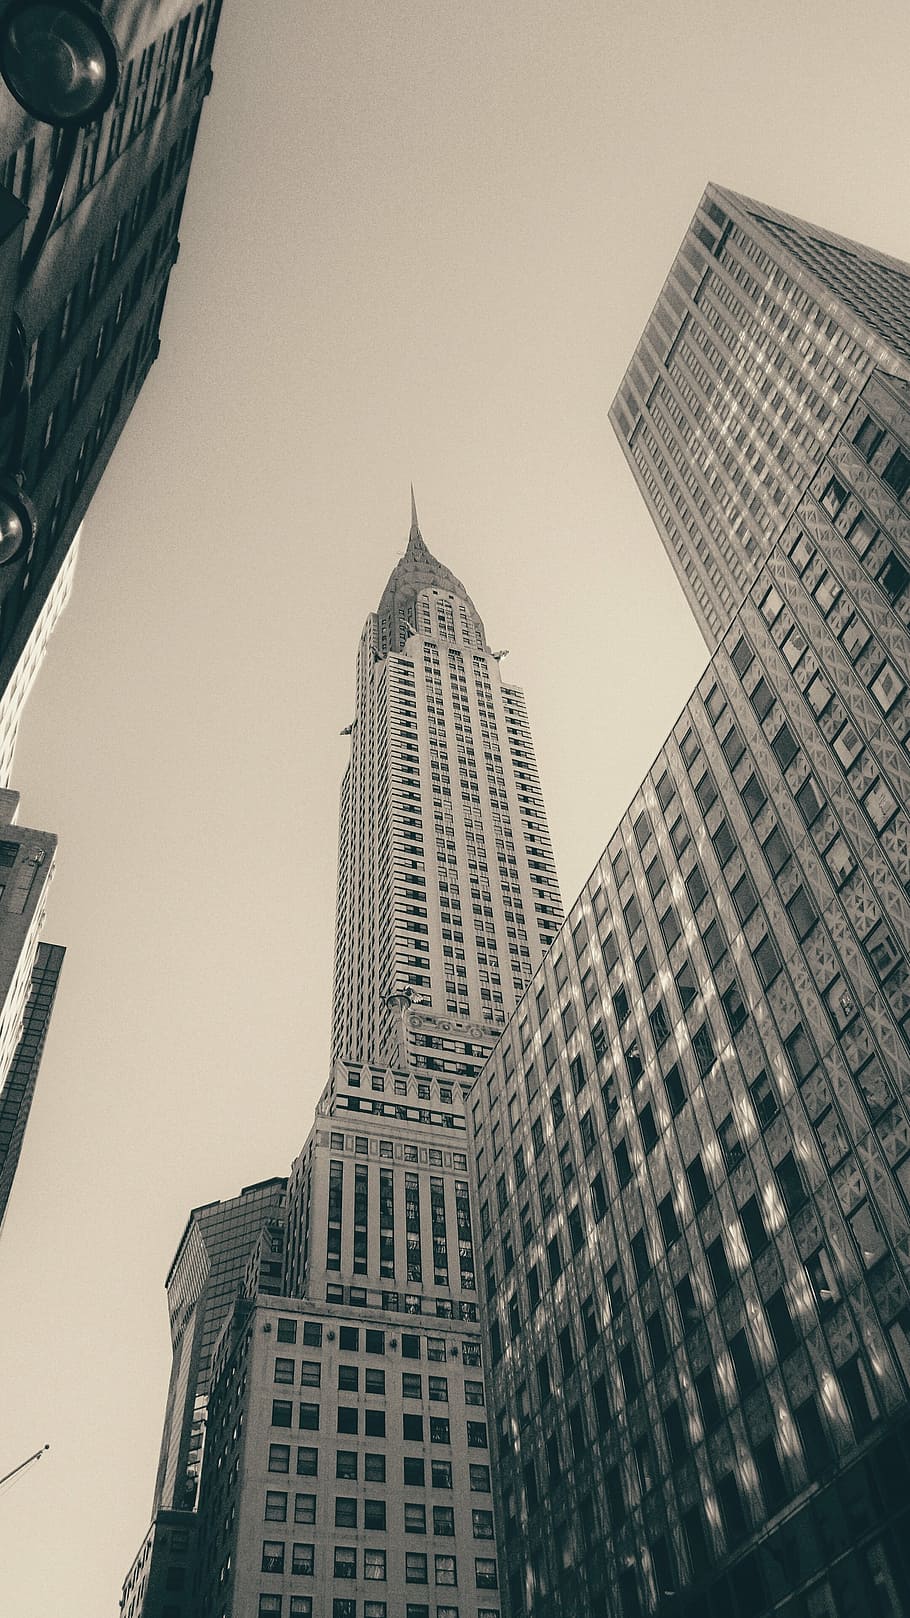 empire state building, edifício chrysler, nova york, construção, torre, arquitetura, moderna, contemporânea, alto, fachada